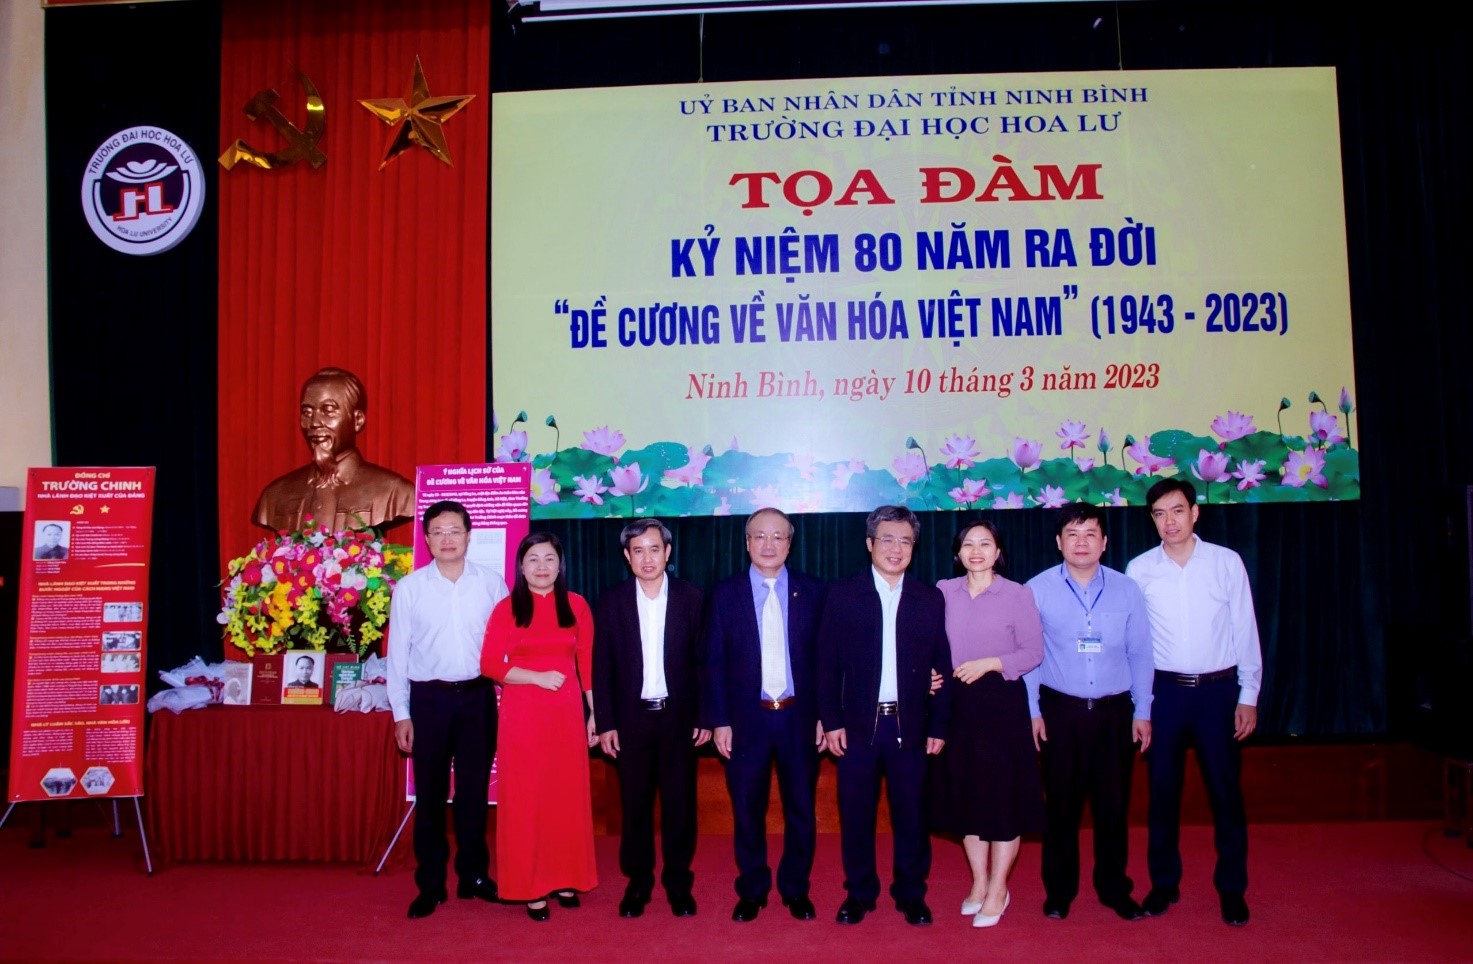 Tọa đàm Kỉ niệm 80 năm ra đời “Đề cương về văn hóa Việt Nam” (1943 - 2023)